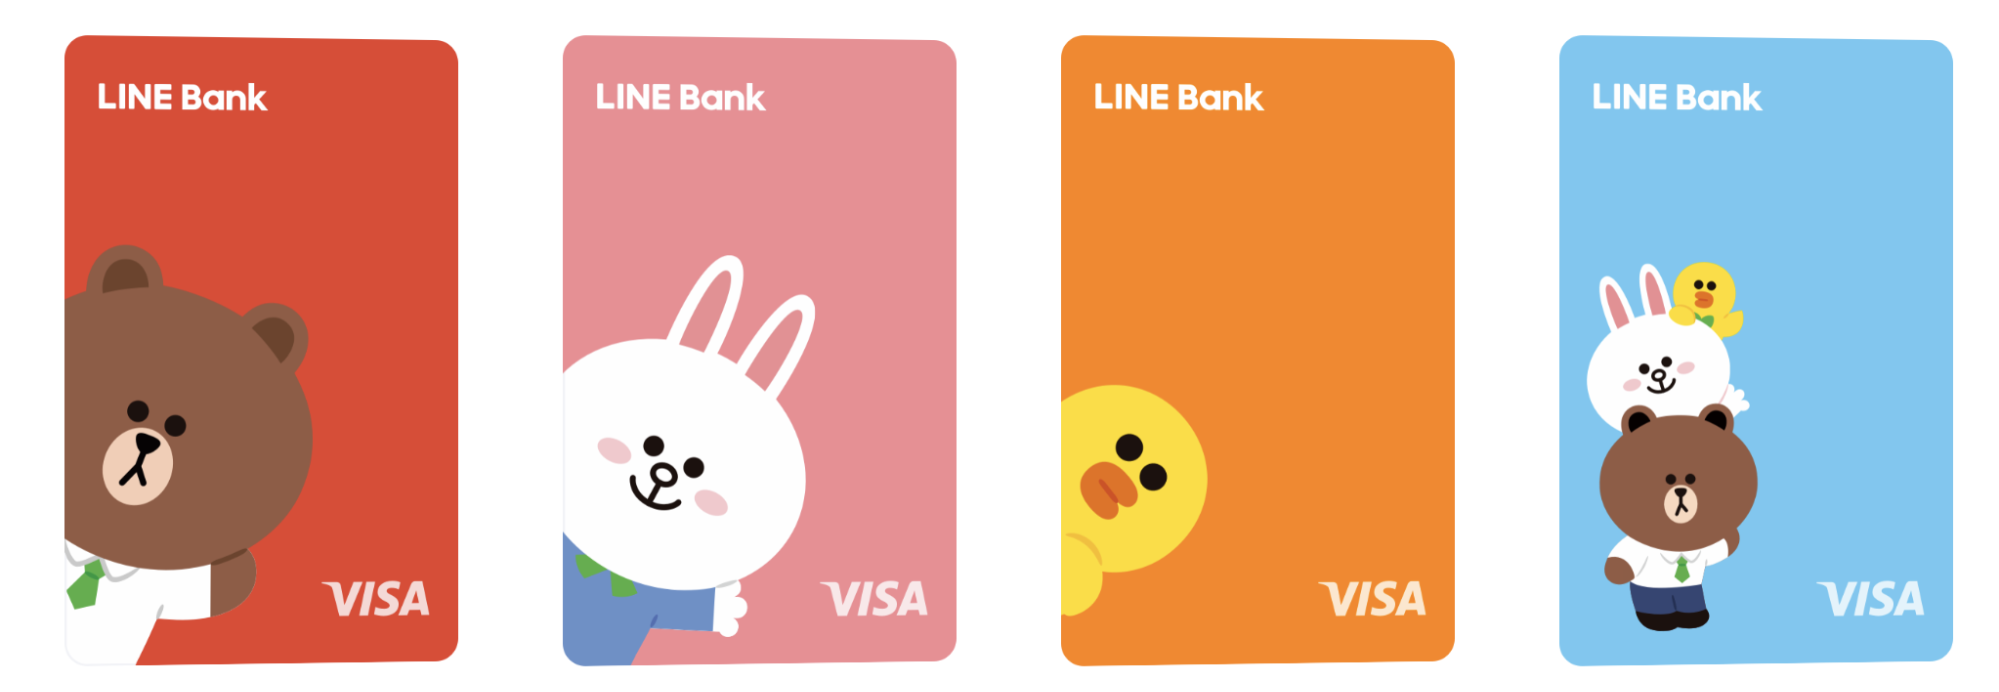 Line bank快點卡共有4款。